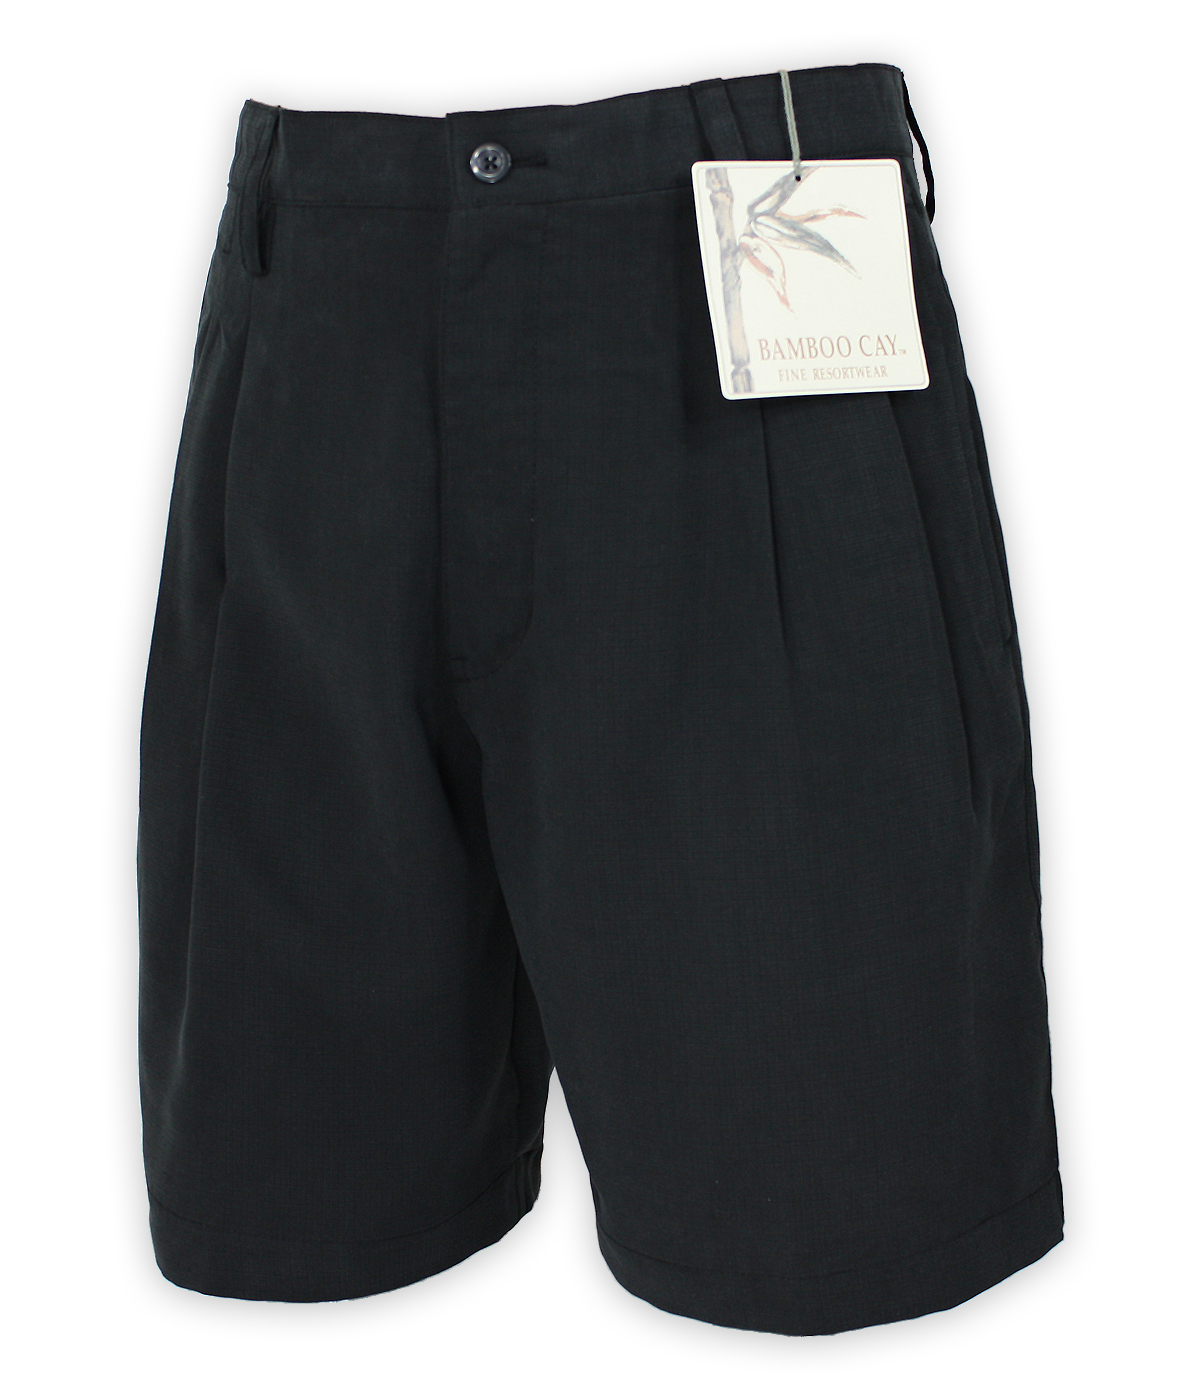 Bamboo Cay Black Shorts